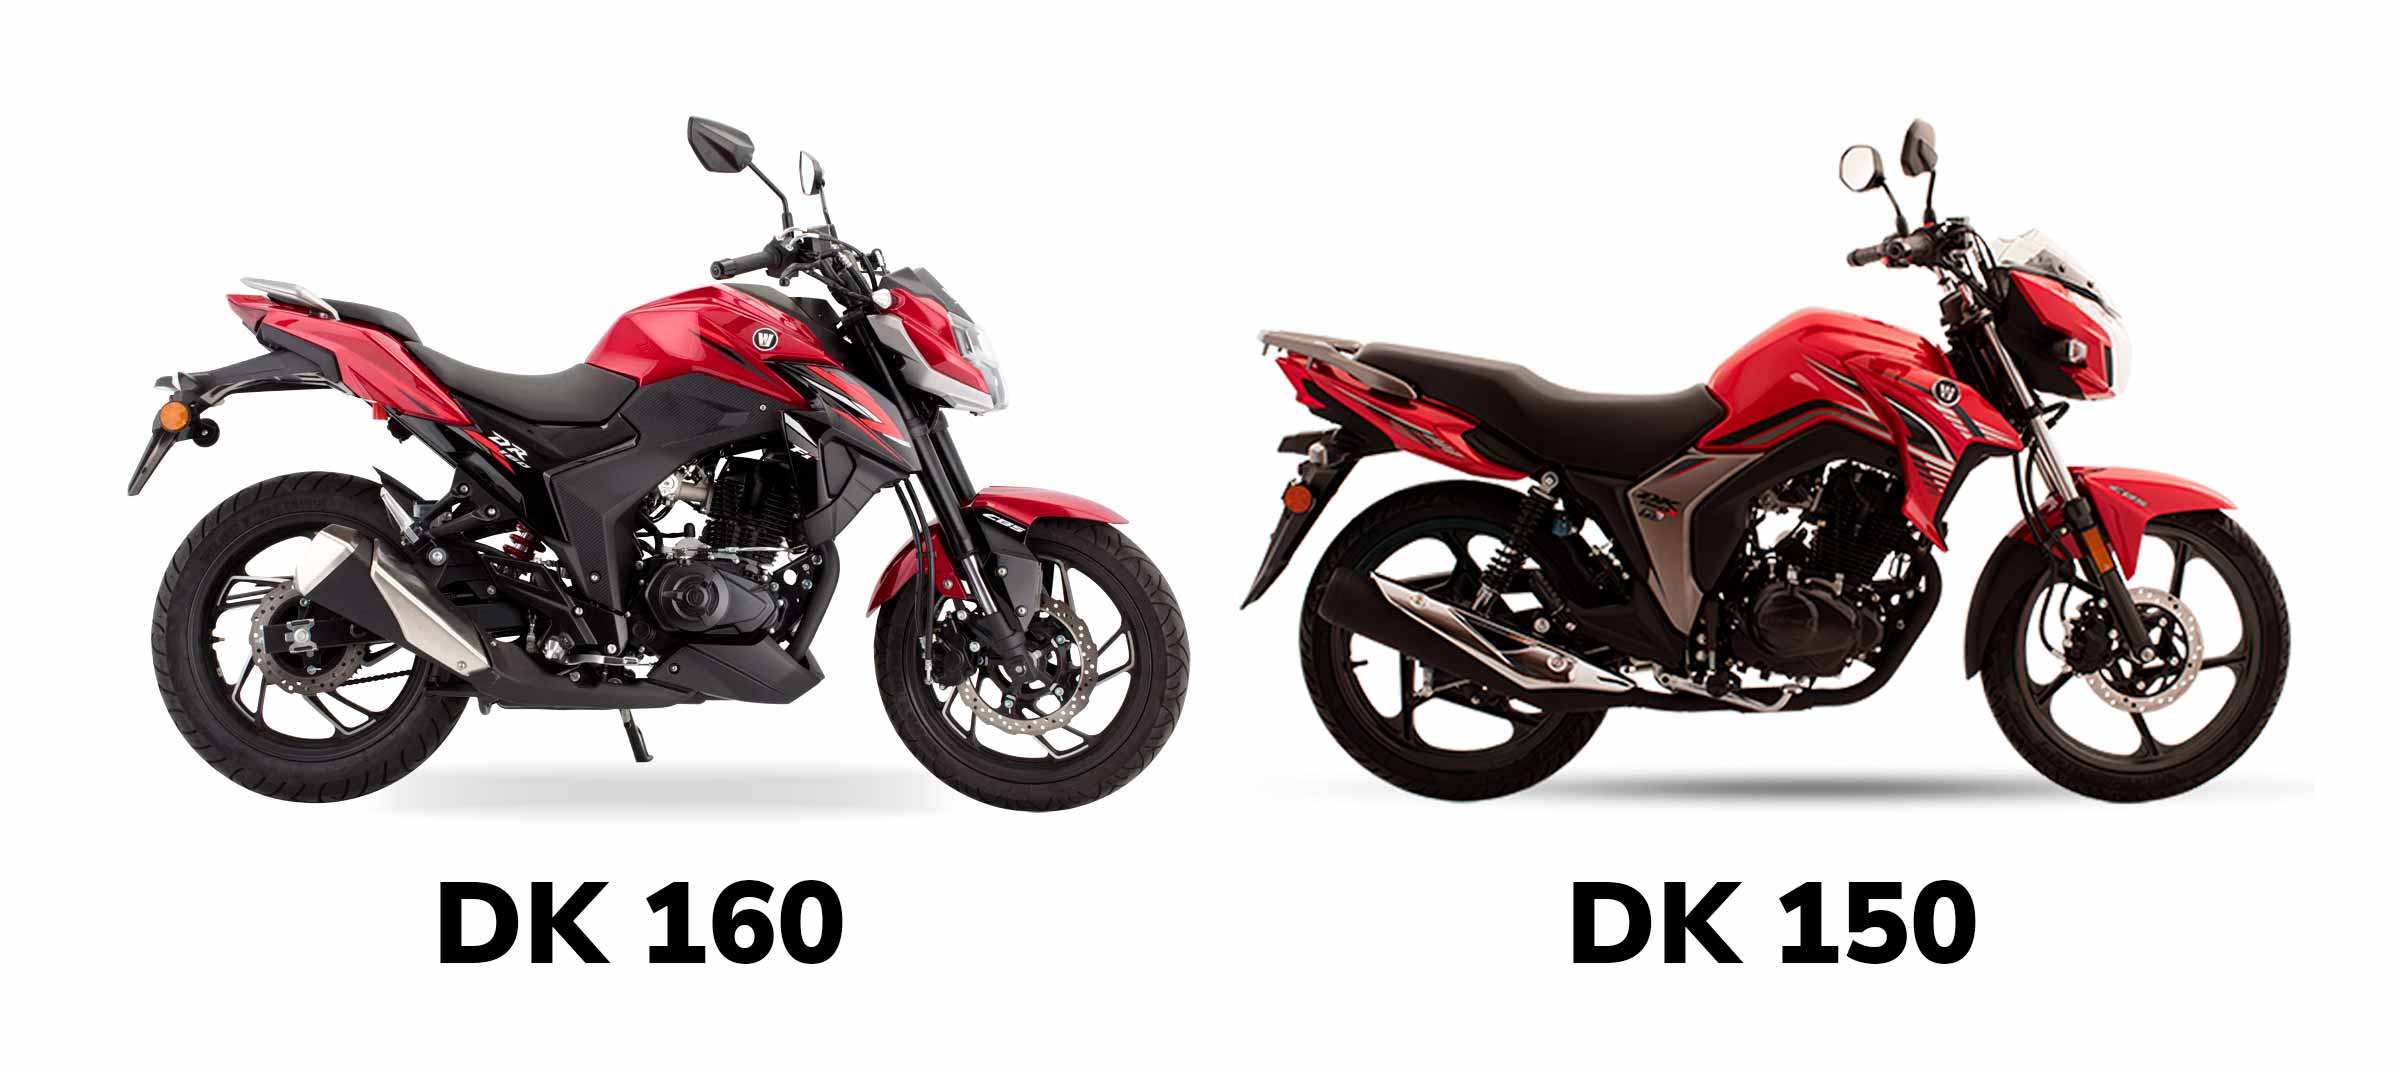 A DK 160 Fi lembra muito a DK 150, mas com avanços que deixaram o modelo mais sóbrio e moderno.